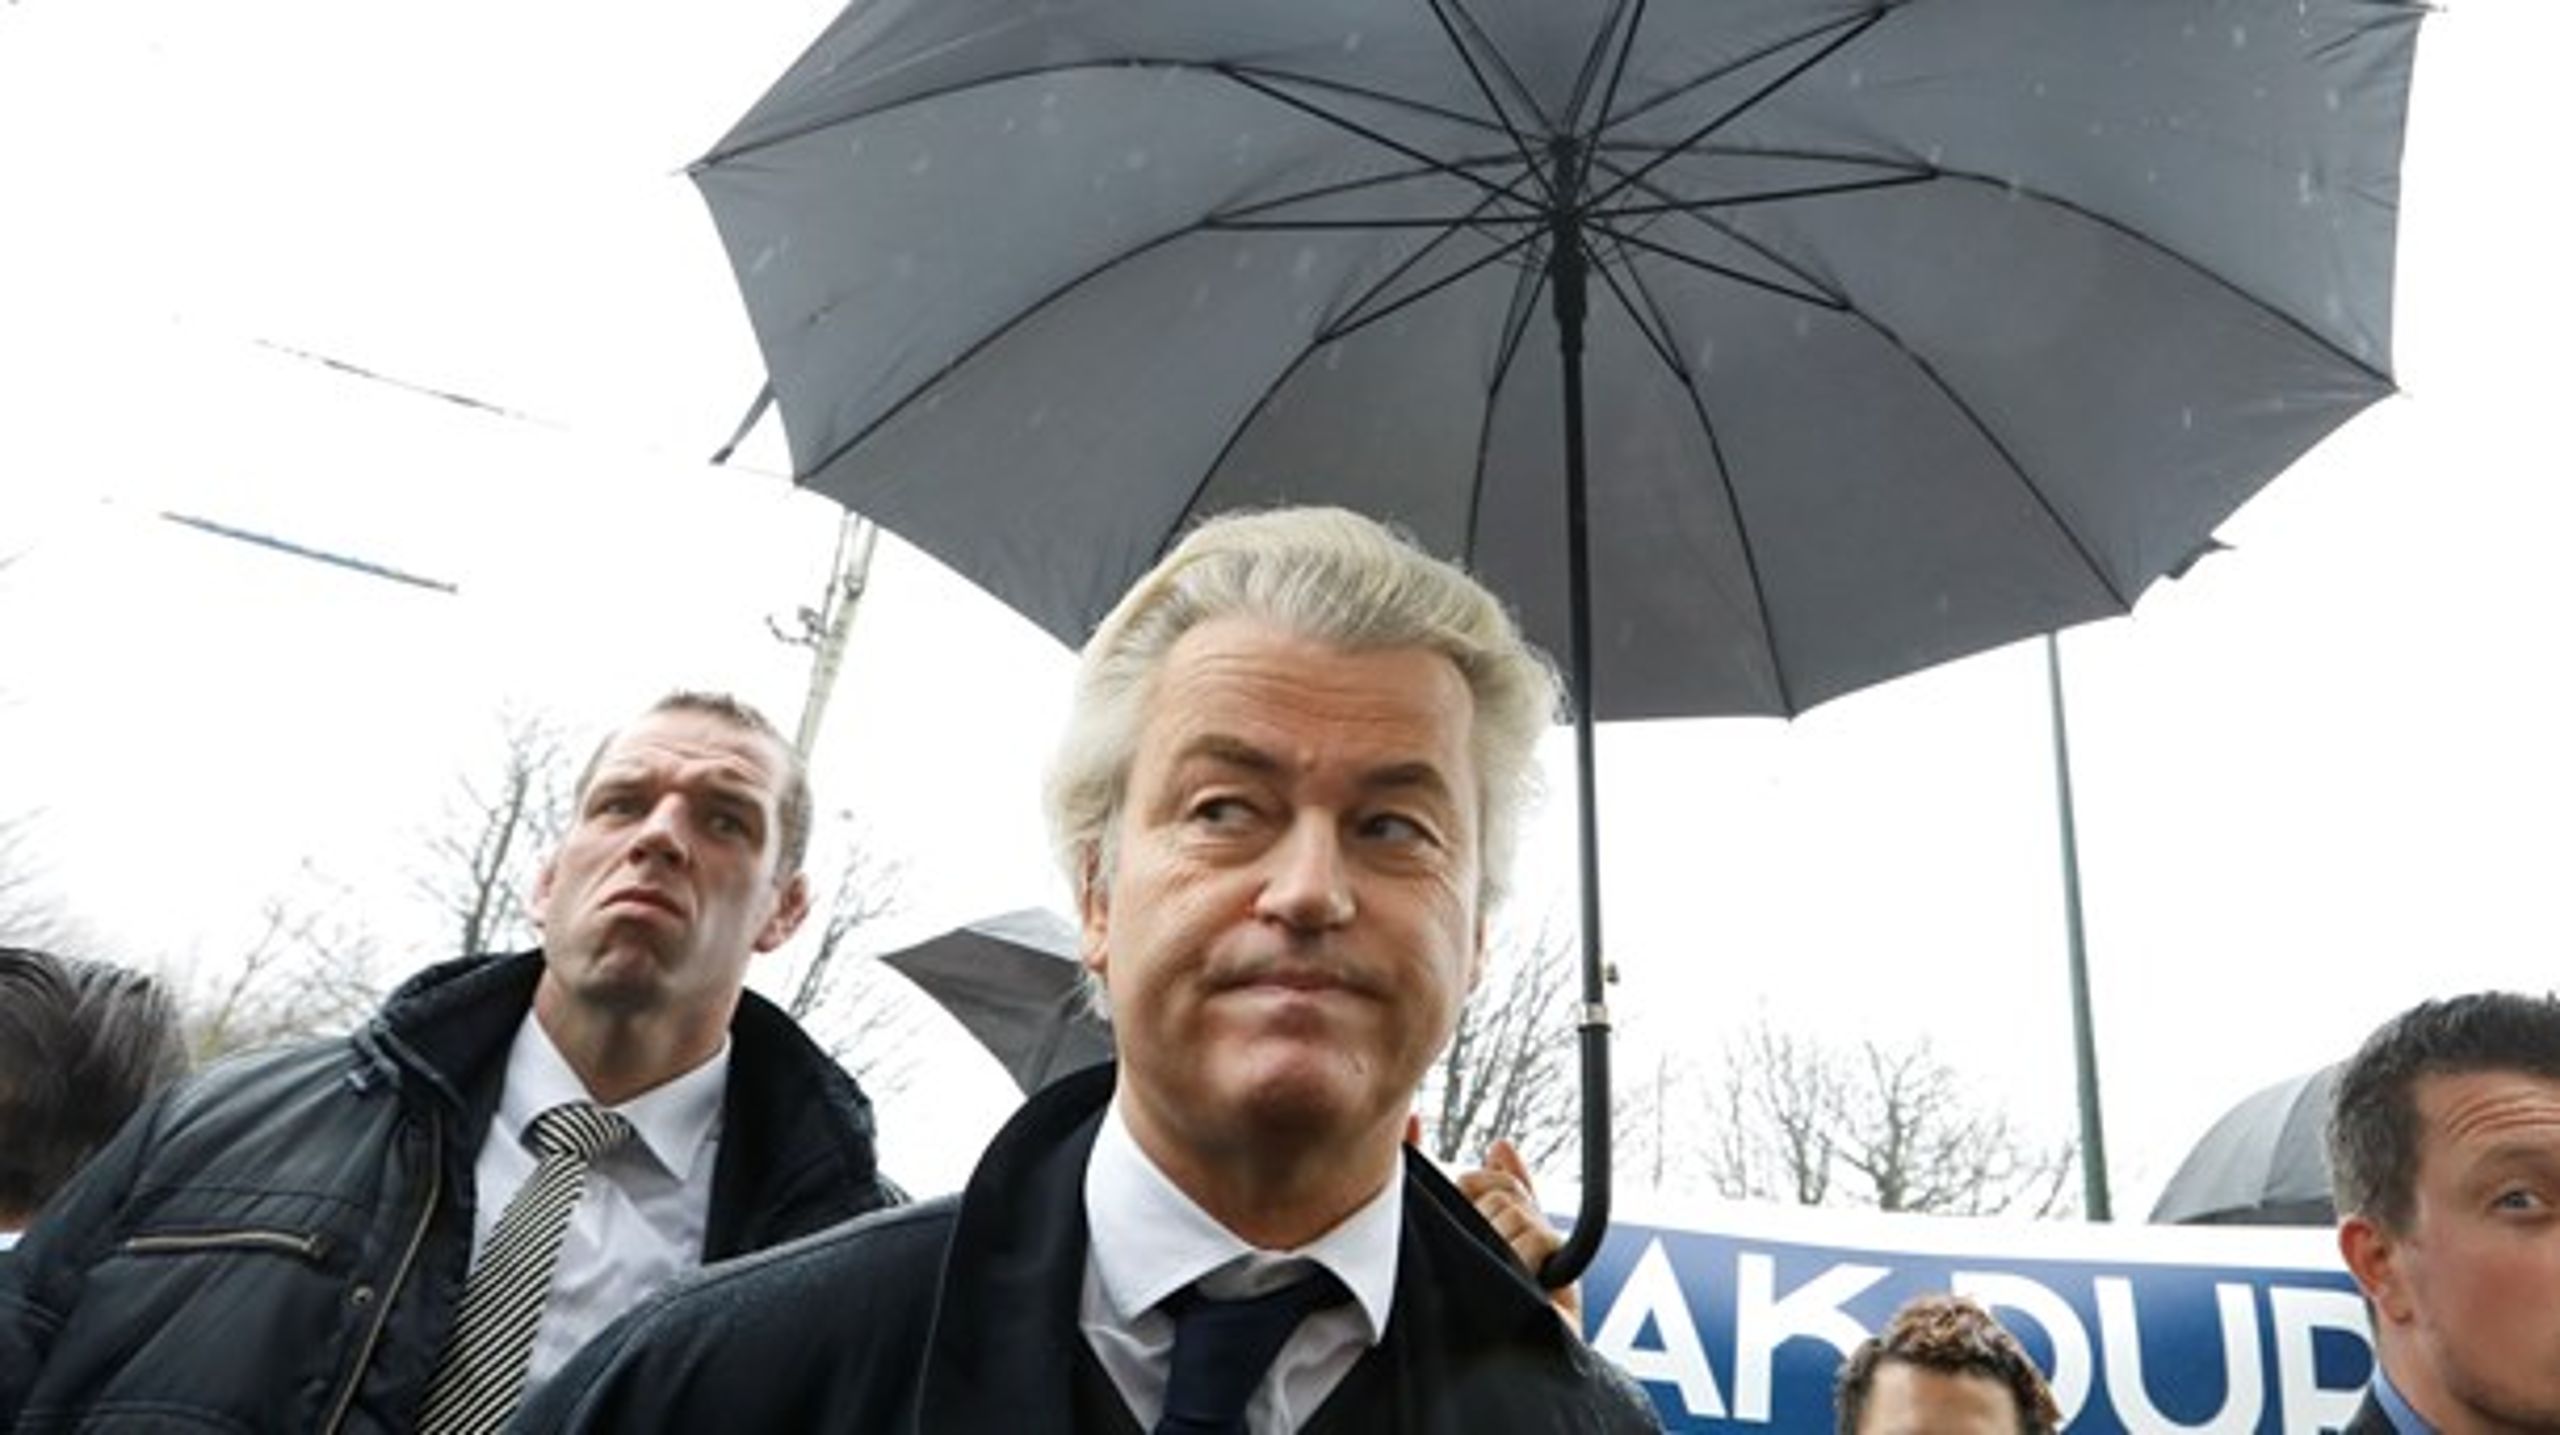 Måske Wilders nedgang er led i et større tilbageslag for de ganske ubehagelige populister, spørger Victor Boysen.